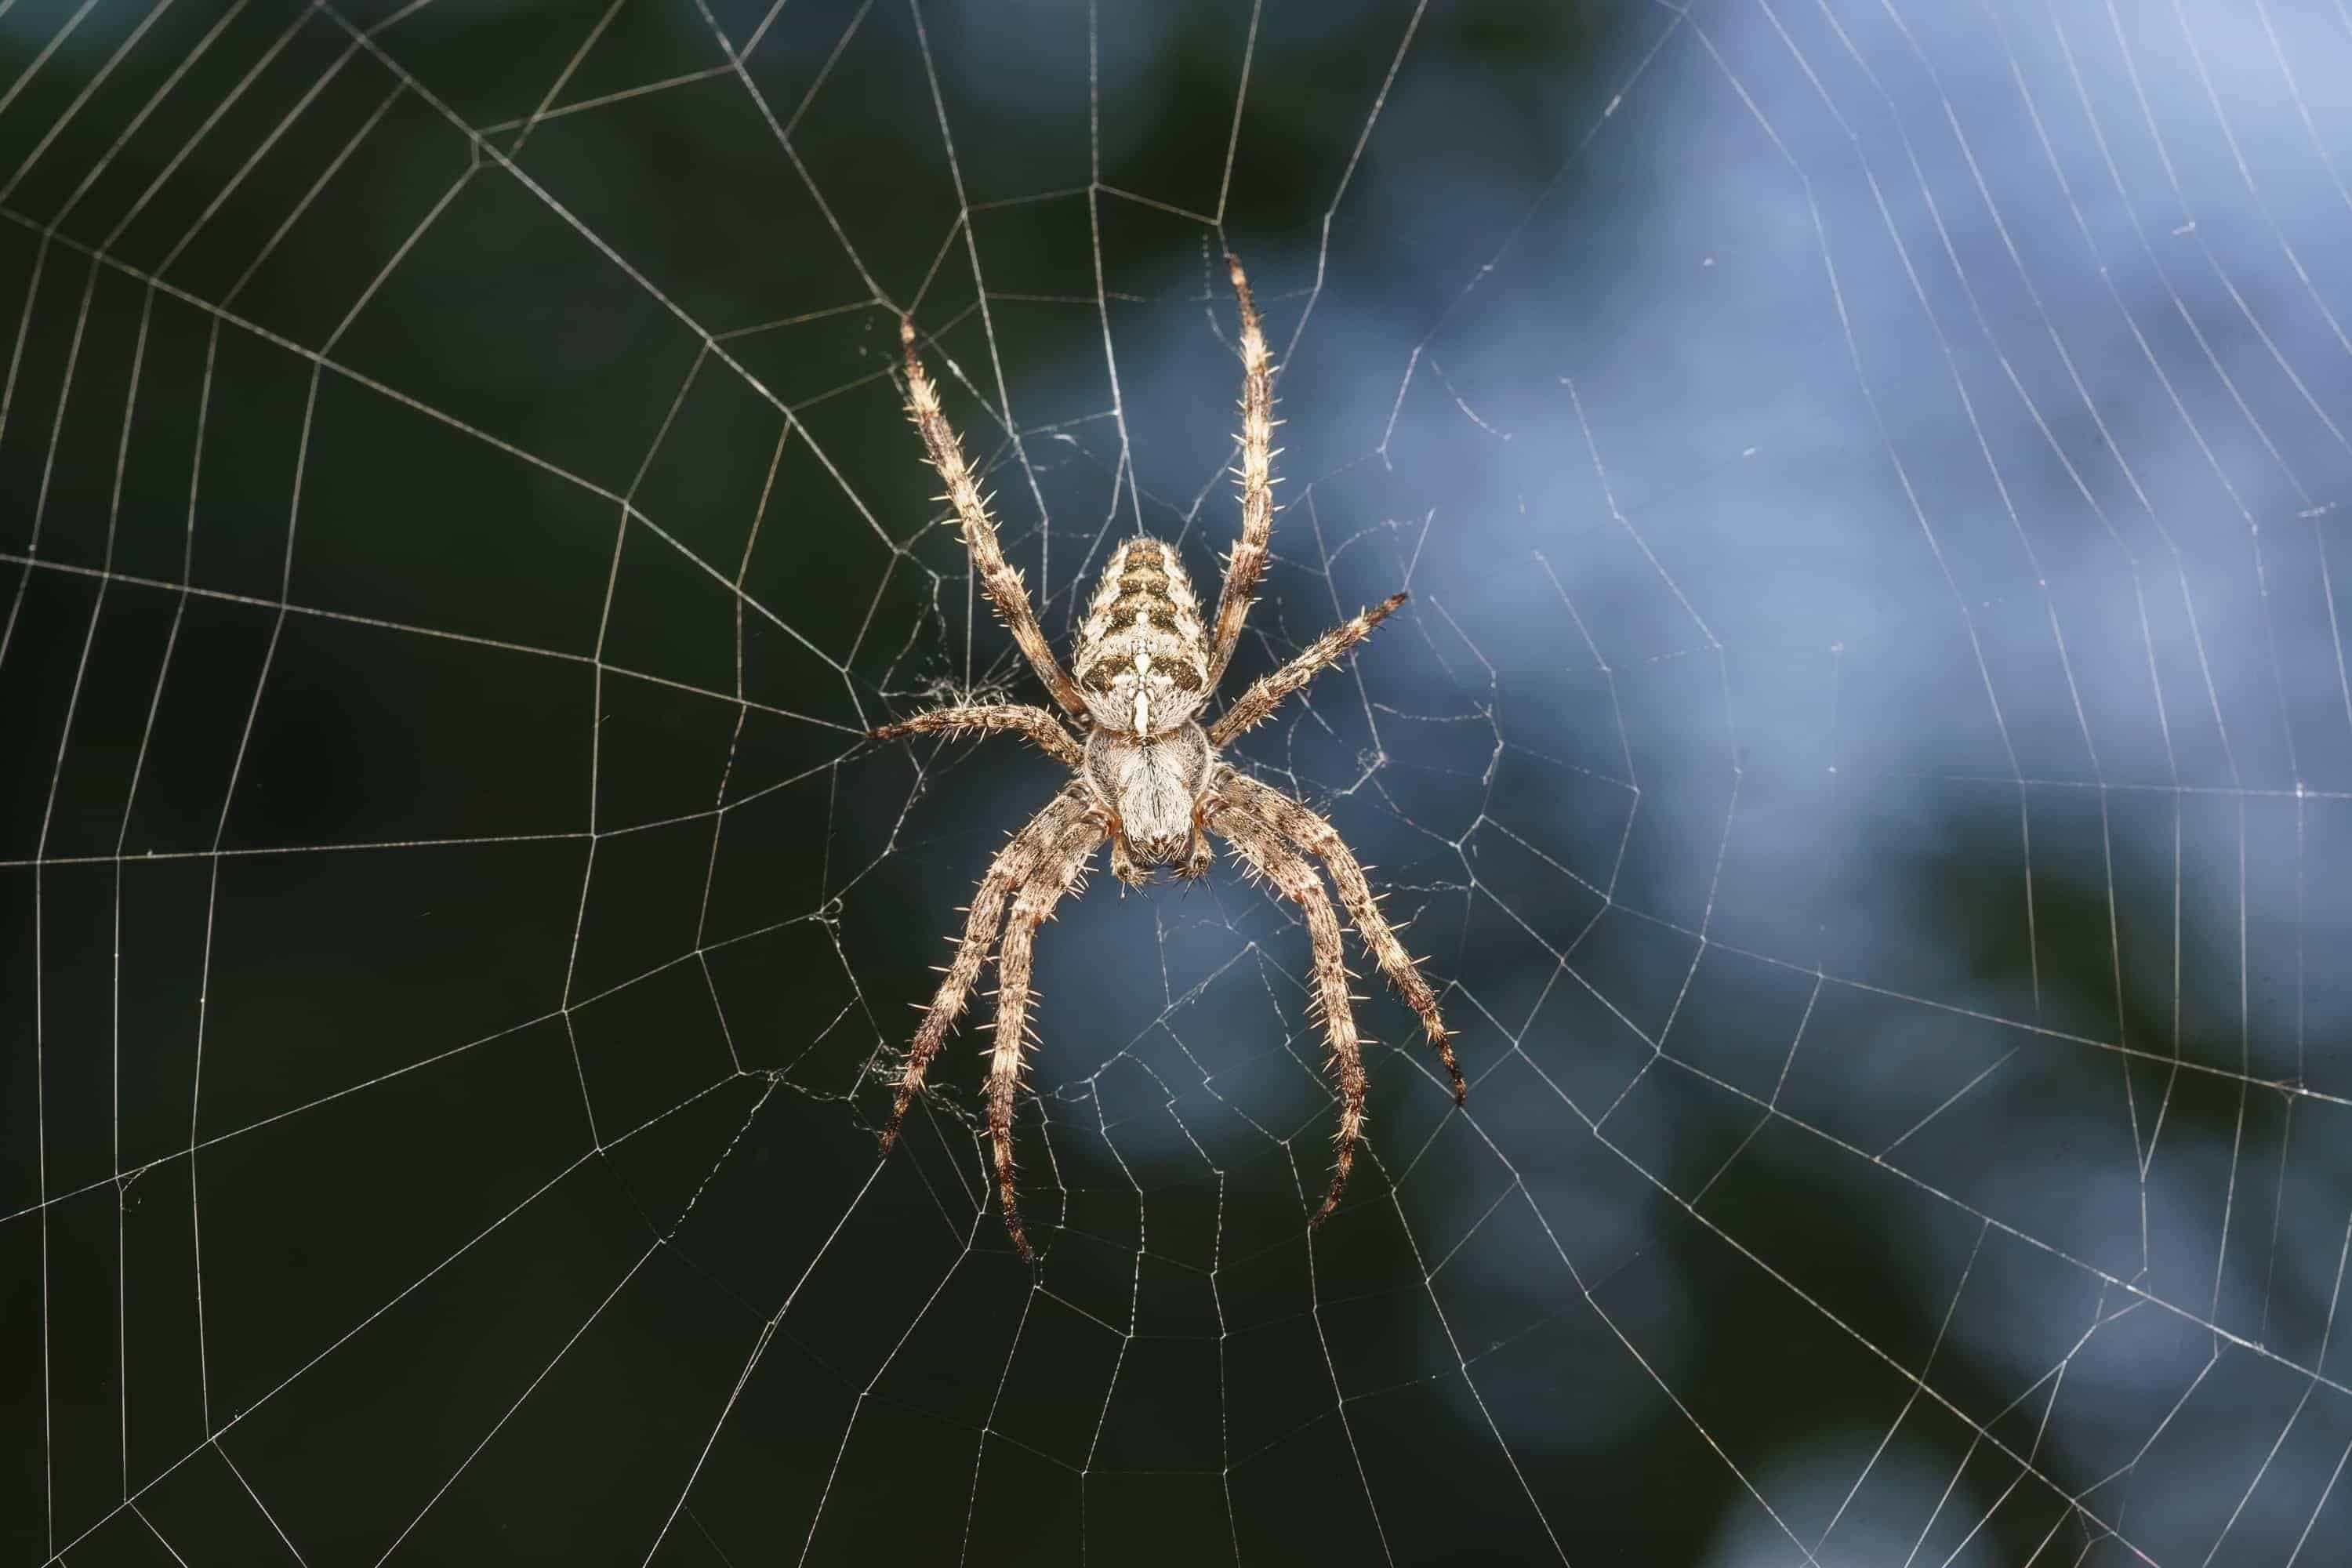 Arachnophobia - die Angst vor Spinnen | Hypnose ist bekannt um diese Angst loszuwerden